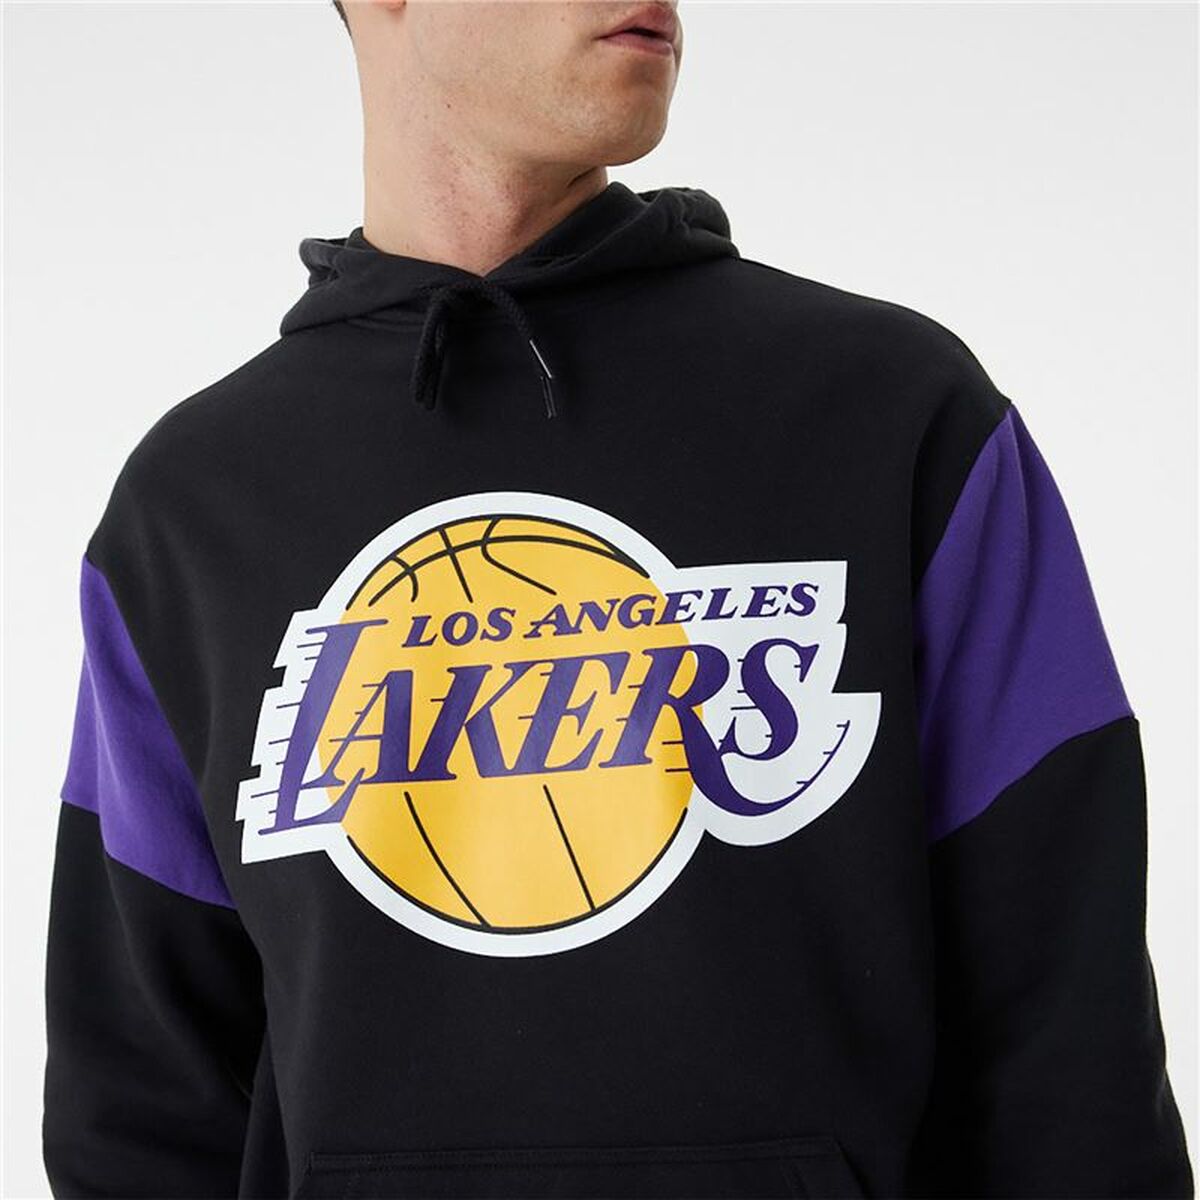 Kaufe Unisex Sweater mit Kapuze New Era NBA Colour Insert LA Lakers Schwarz bei AWK Flagship um € 70.00